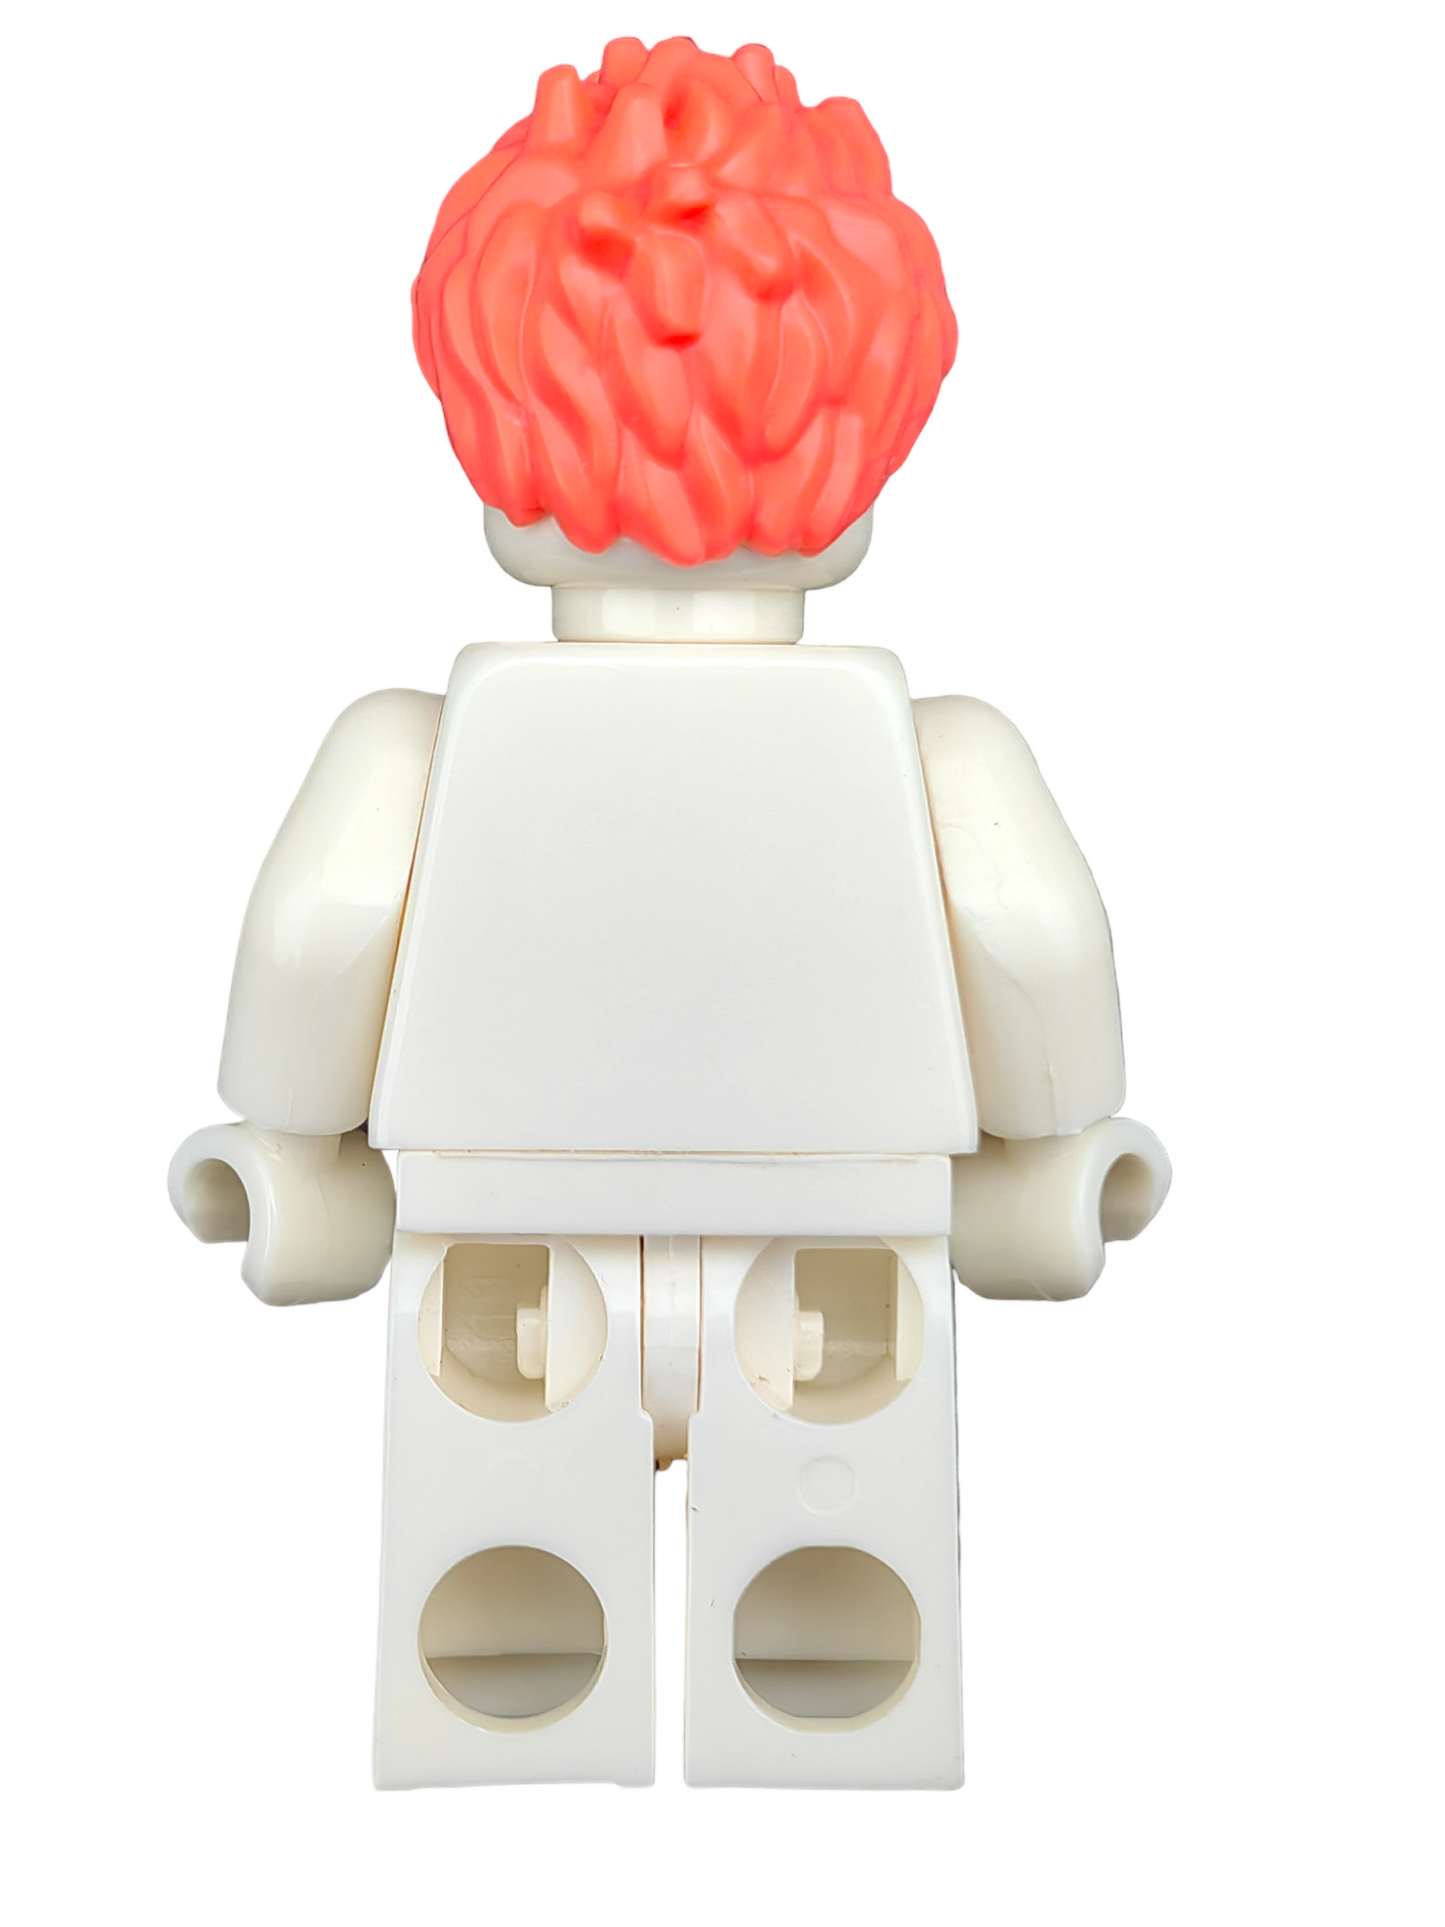 LEGO Wig, Pinkish Spikey Hair - UB1255